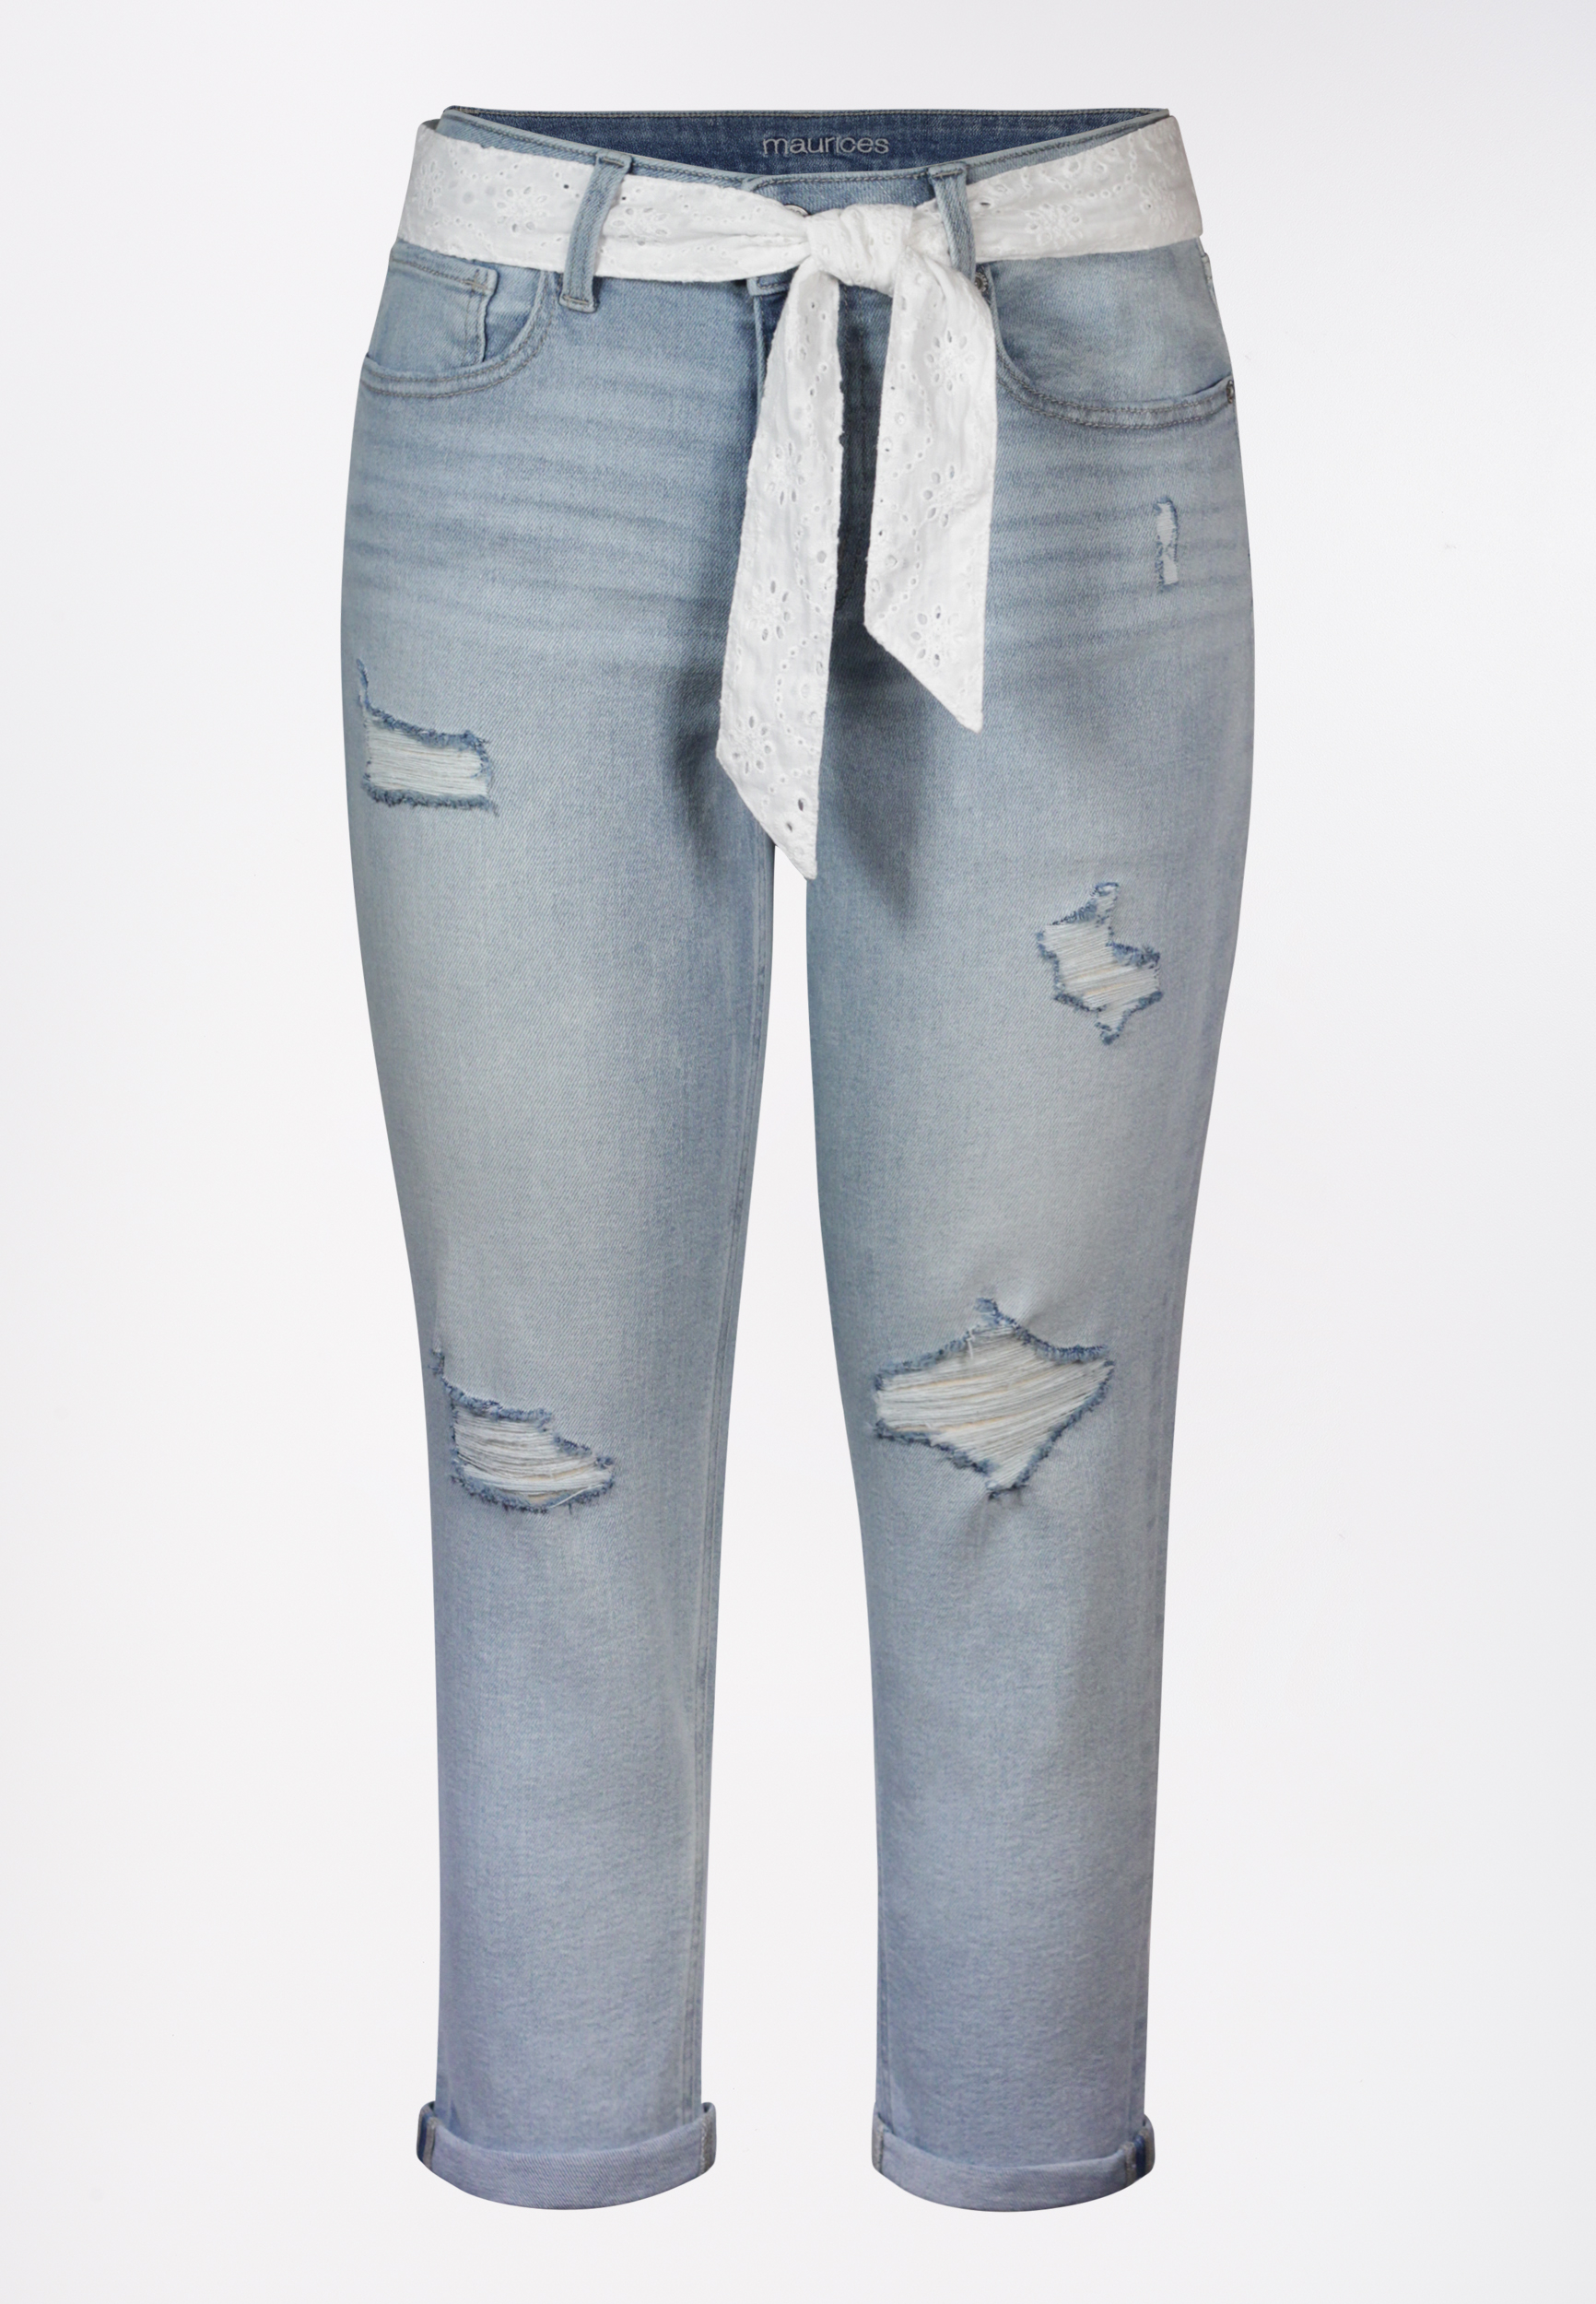 jeans capri for womens online